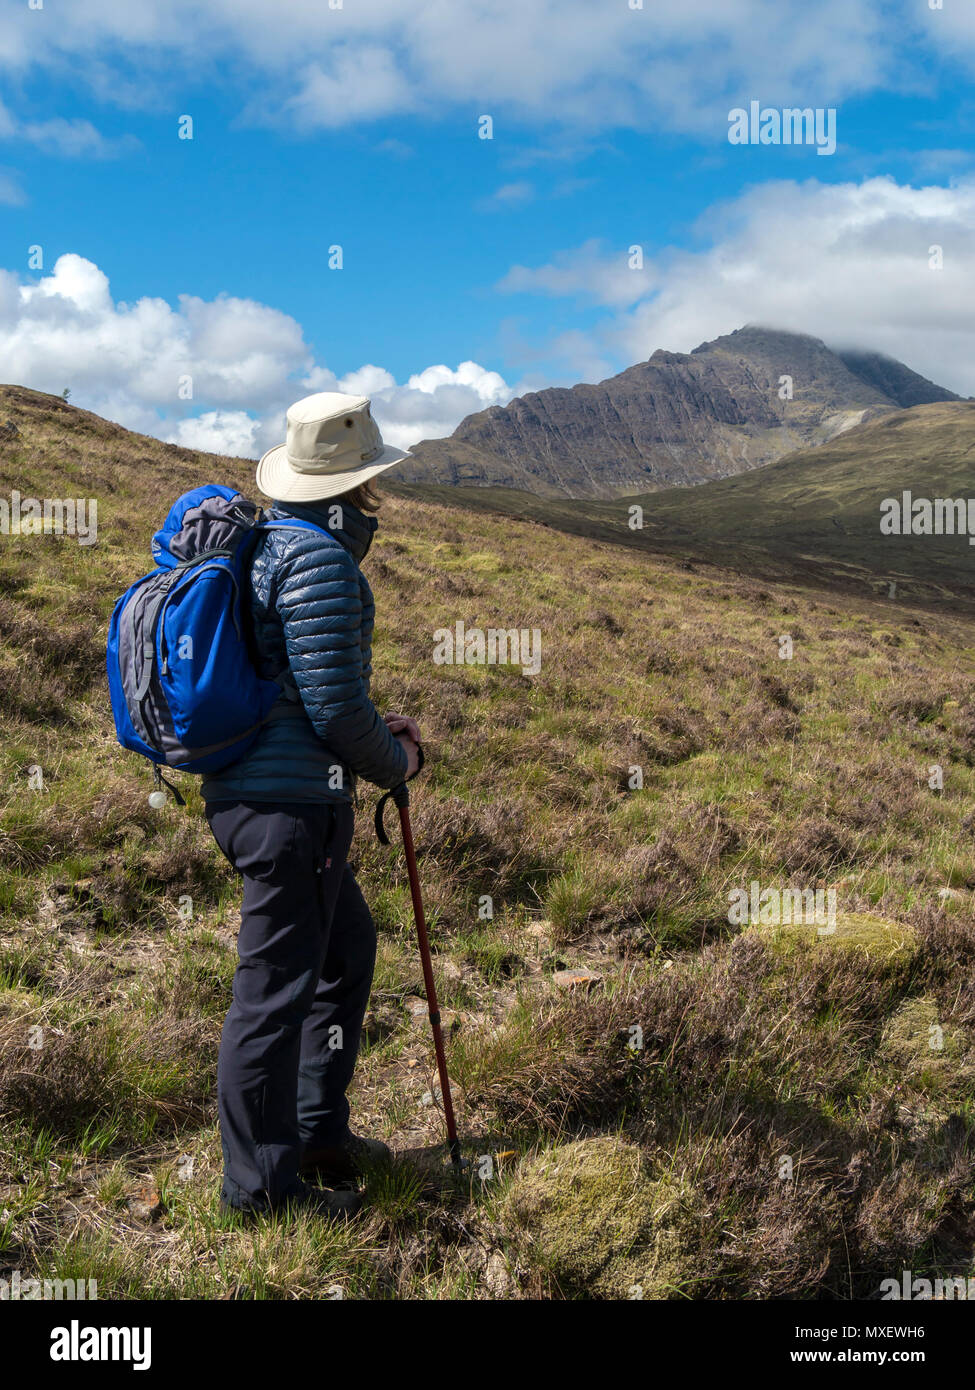 Weibliche Hill Wanderer mit Rucksack, Walking Stock und Hut mit Blaven in der Black Cuillin Berge in der Ferne, Isle of Skye, Schottland, Großbritannien Stockfoto